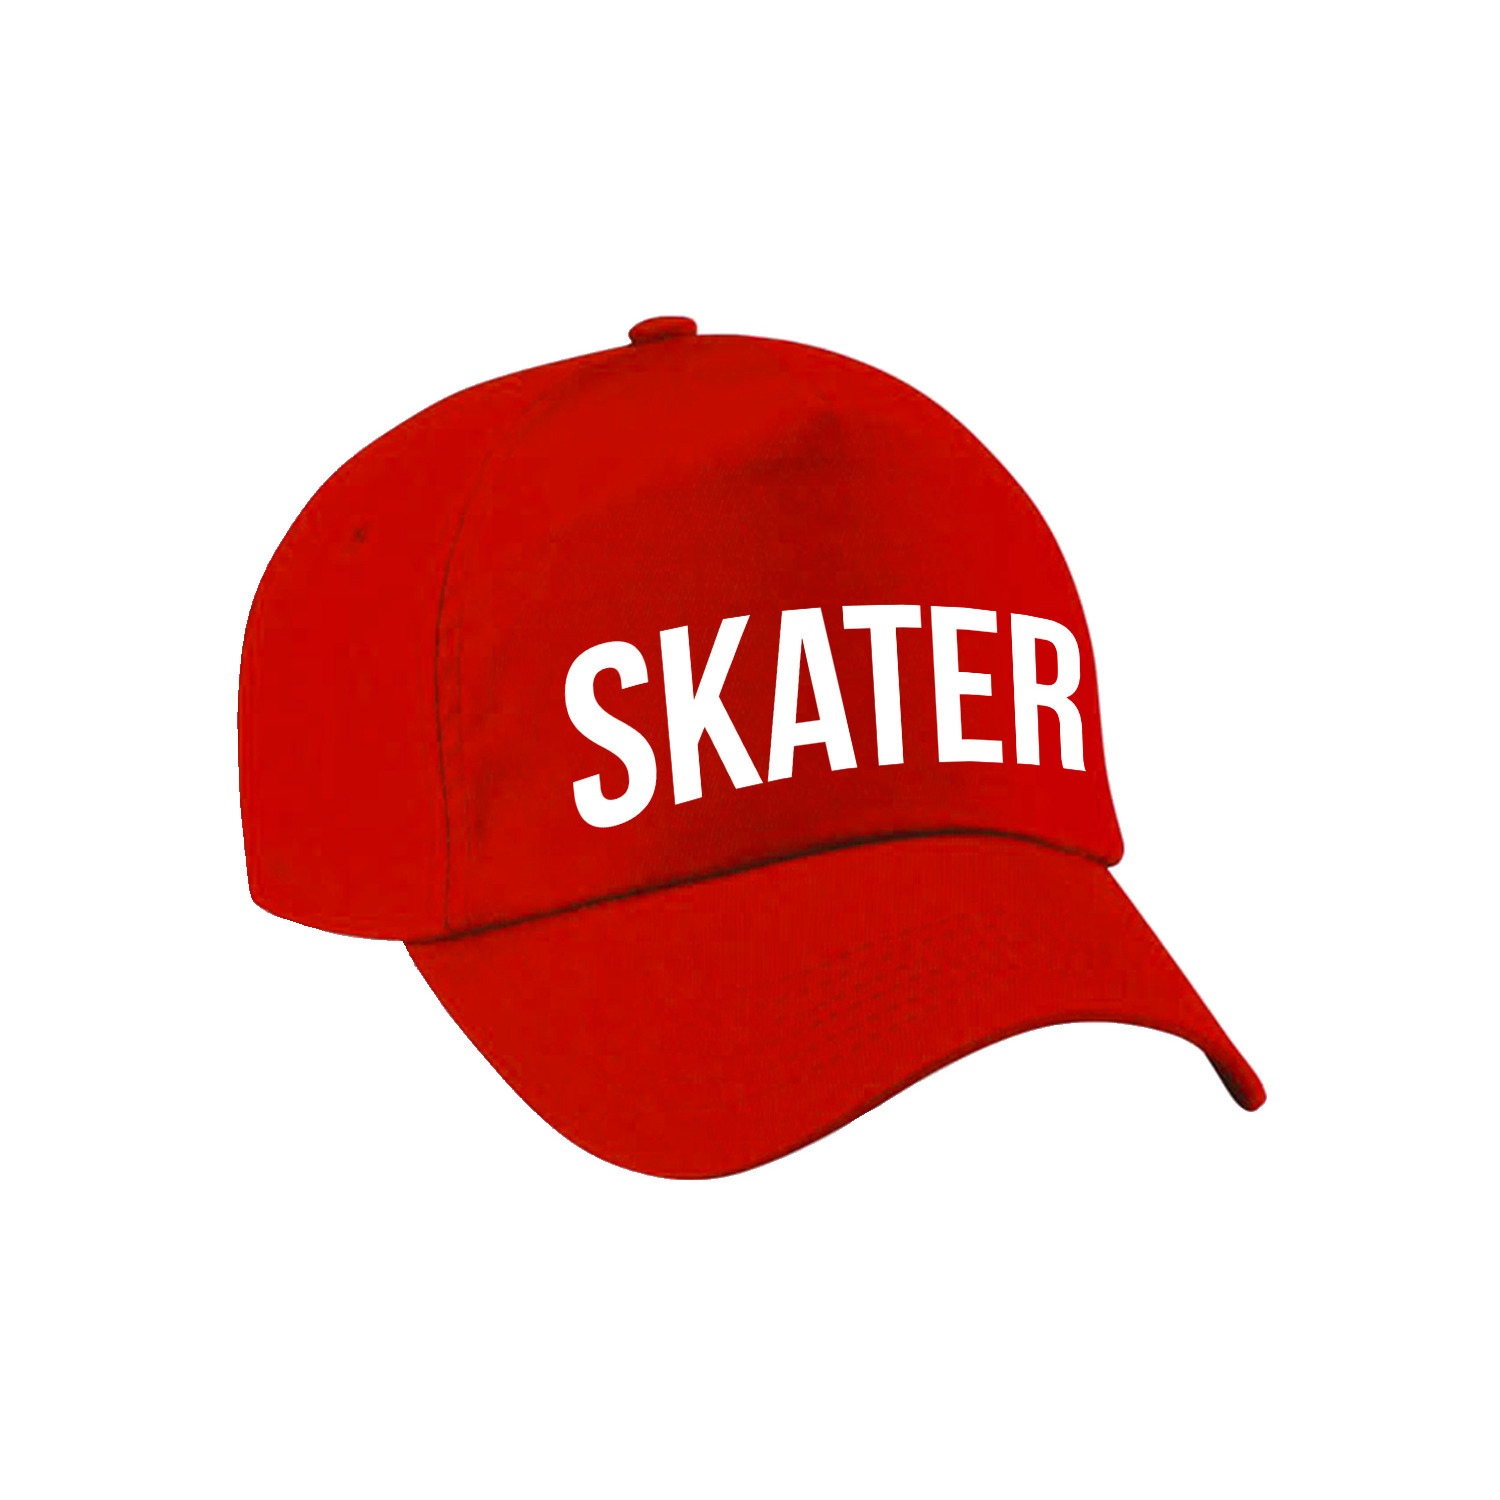 Stoere Skater pet rood voor meisjes en jongens